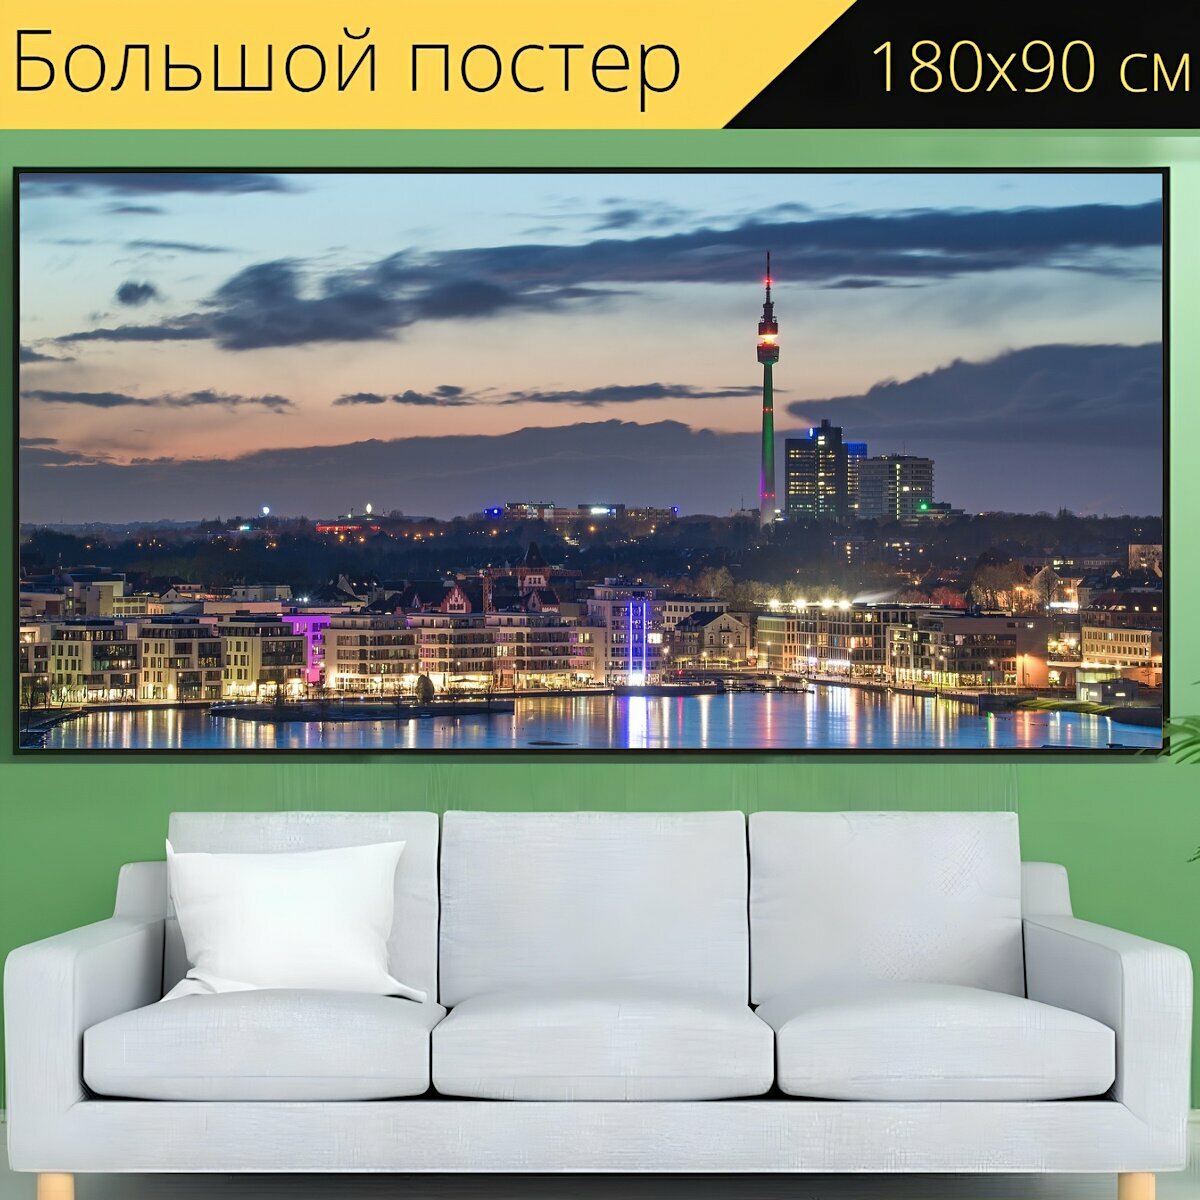 Большой постер "Город, городской ландшафт, панорама" 180 x 90 см. для интерьера